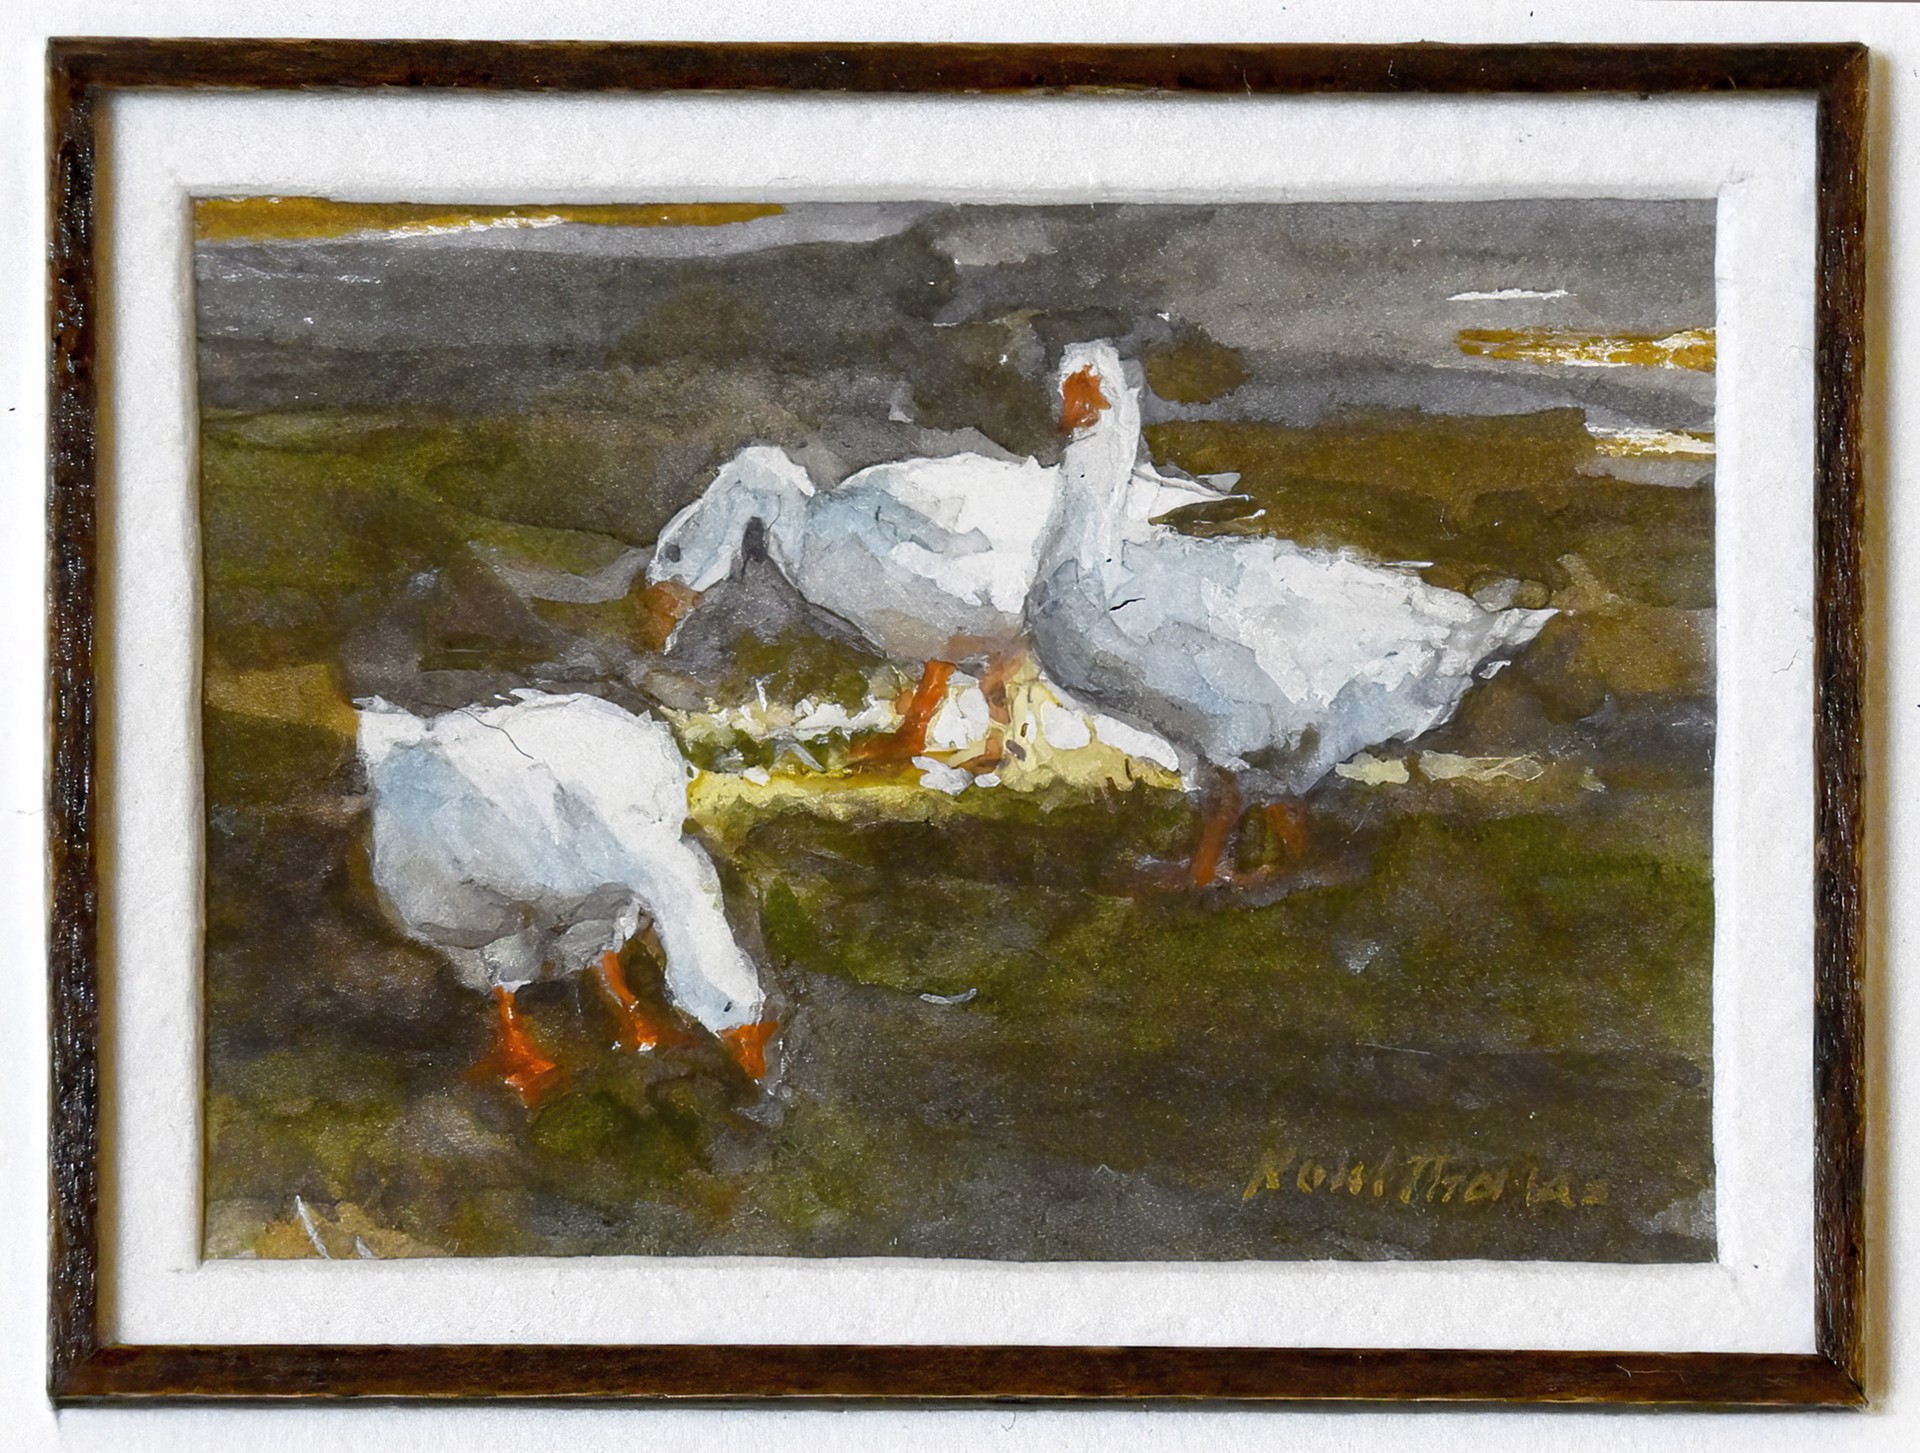 Geese (miniature) by Noel Thomas